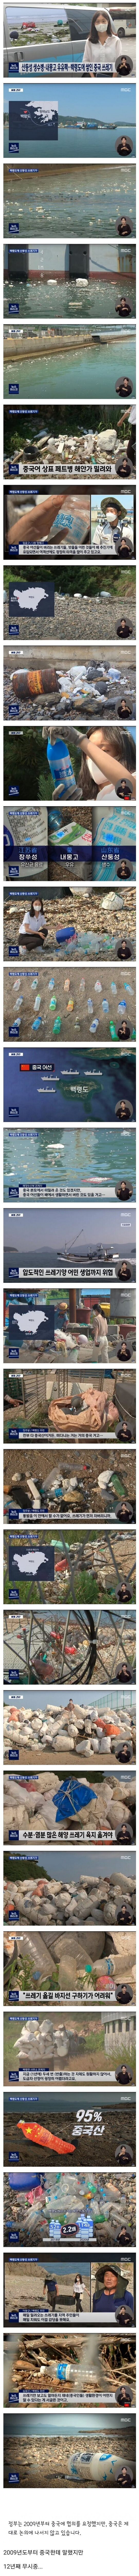 한국에 쓰레기 투척하는 쓰레기들